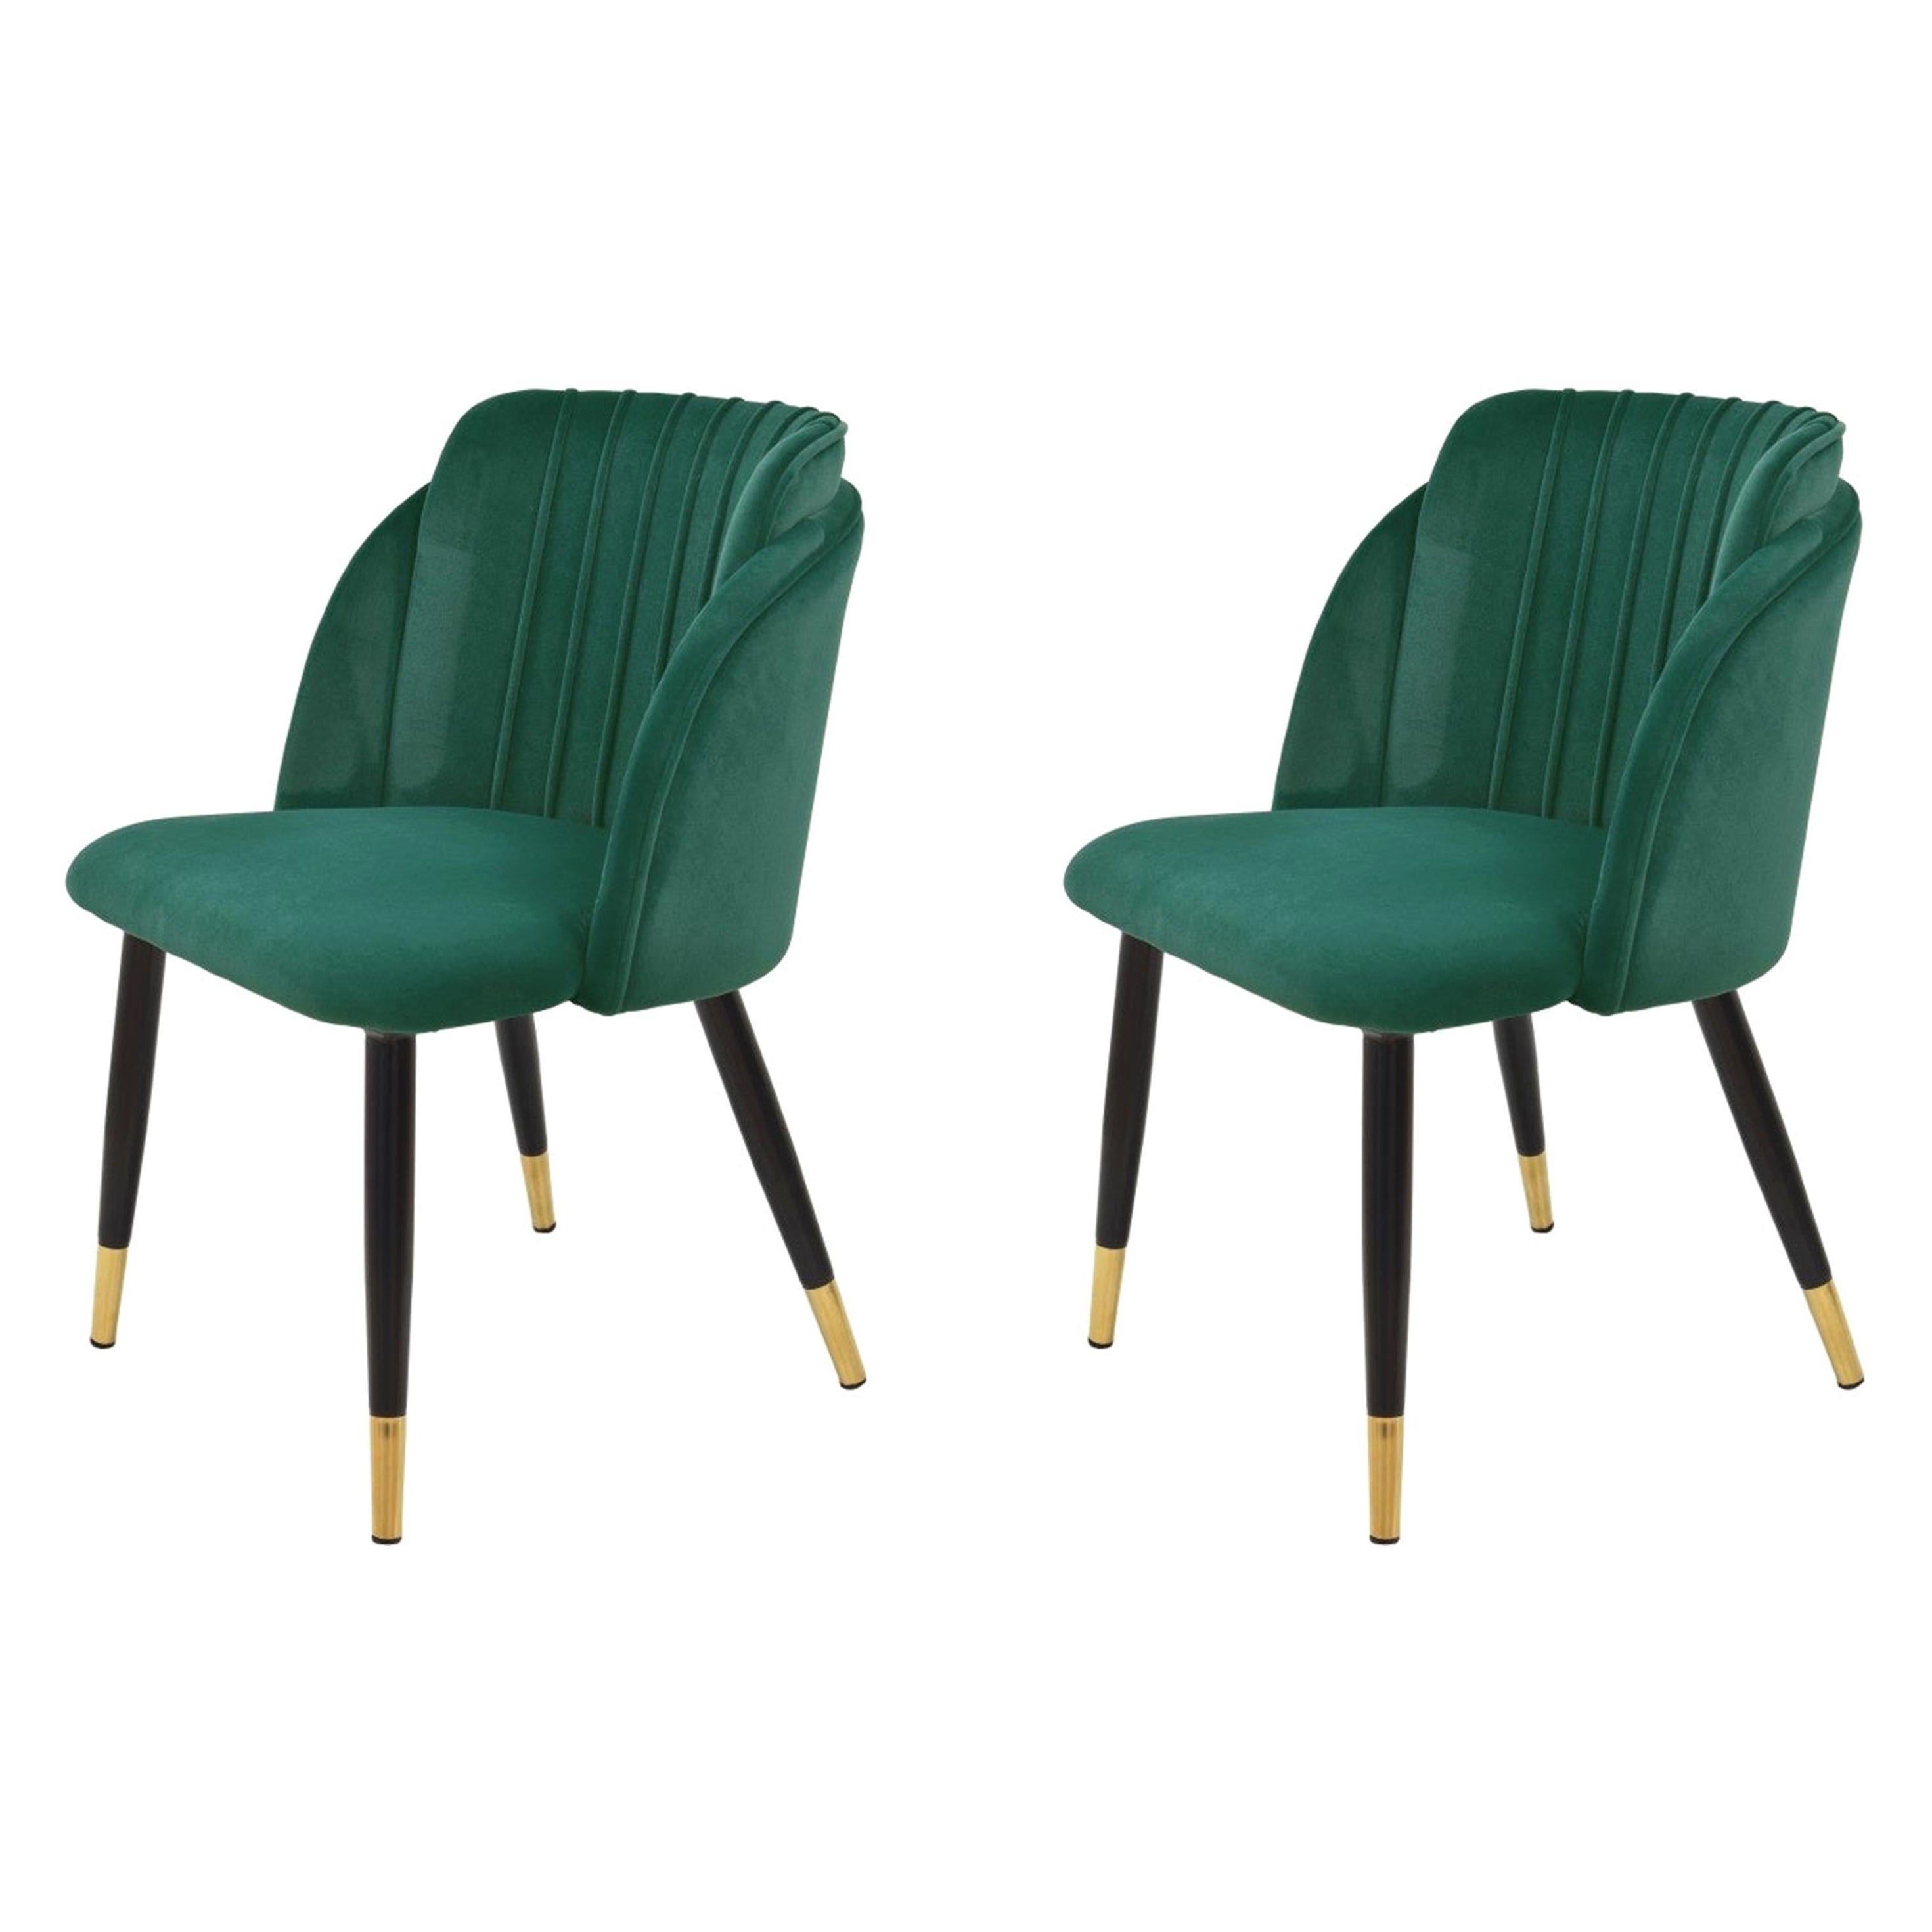 Ein Paar neue spanische Stühle, Metall, grüne Samtpolsterung